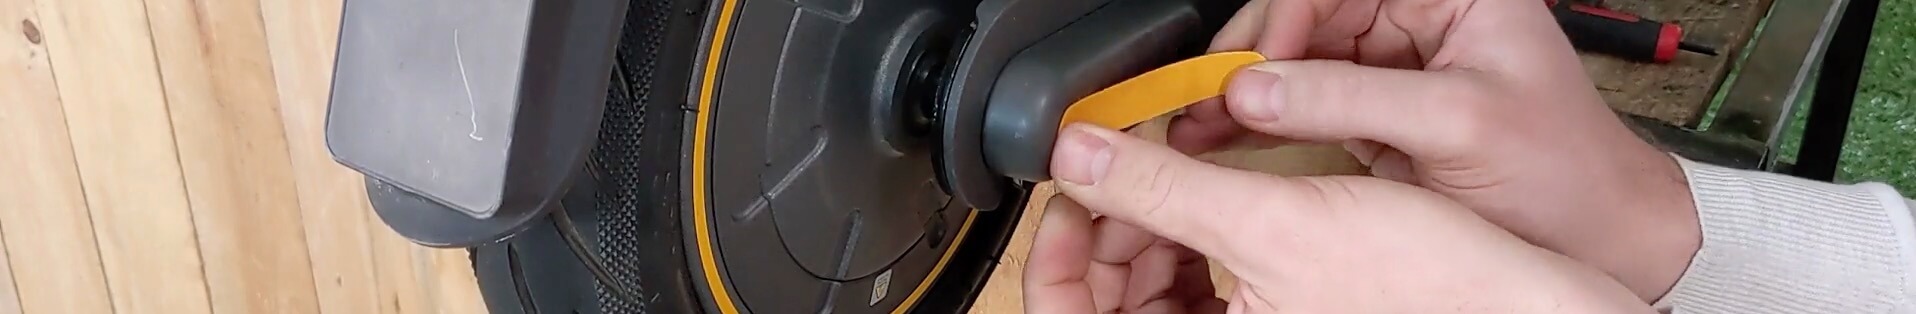 Terminer la réparation du pneu arrière Ninebot G30 Max